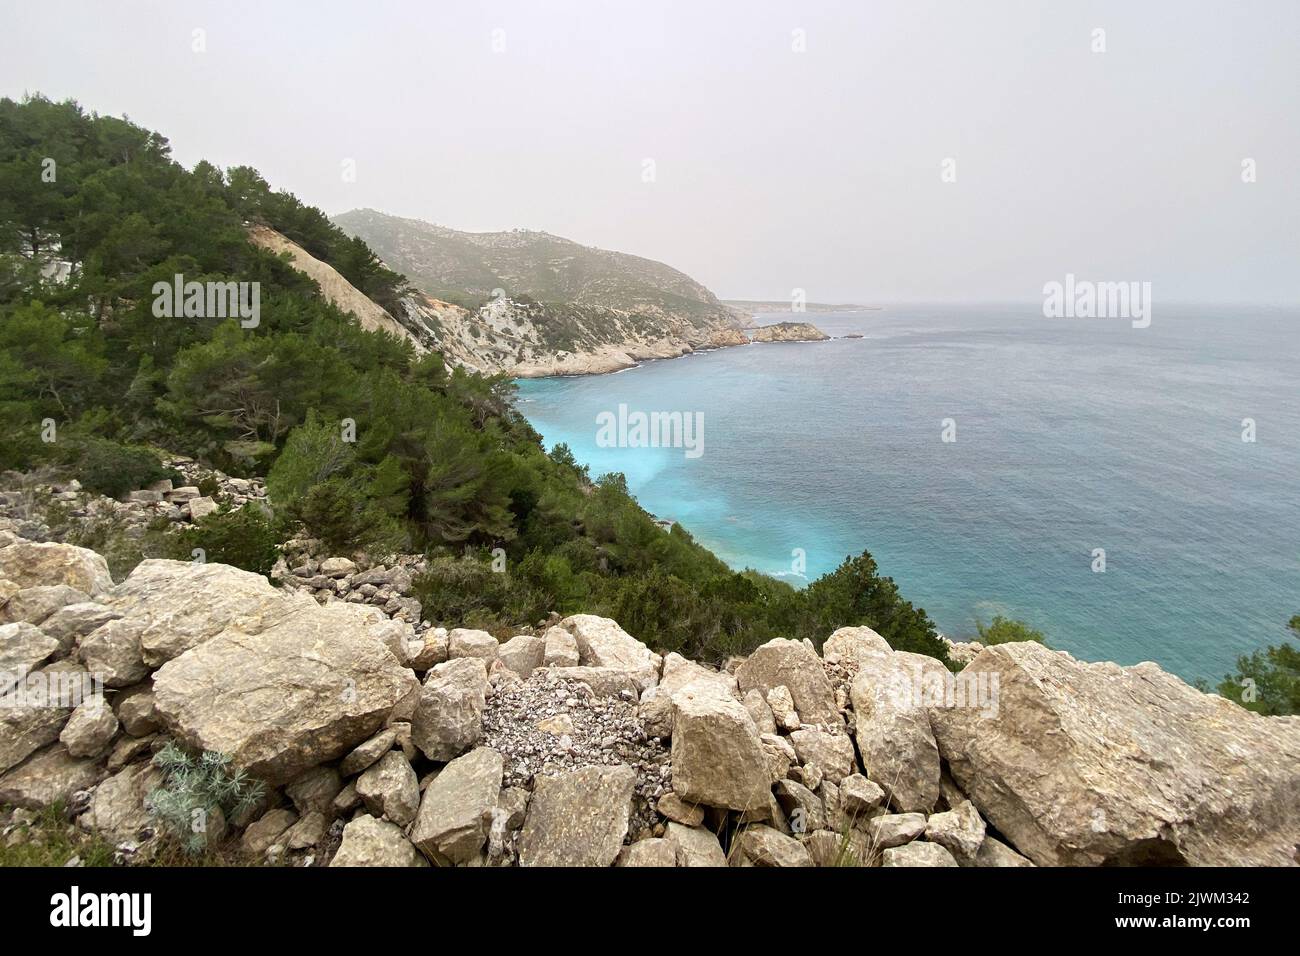 Coast of Ibiza island with the blue sea Stock Photo